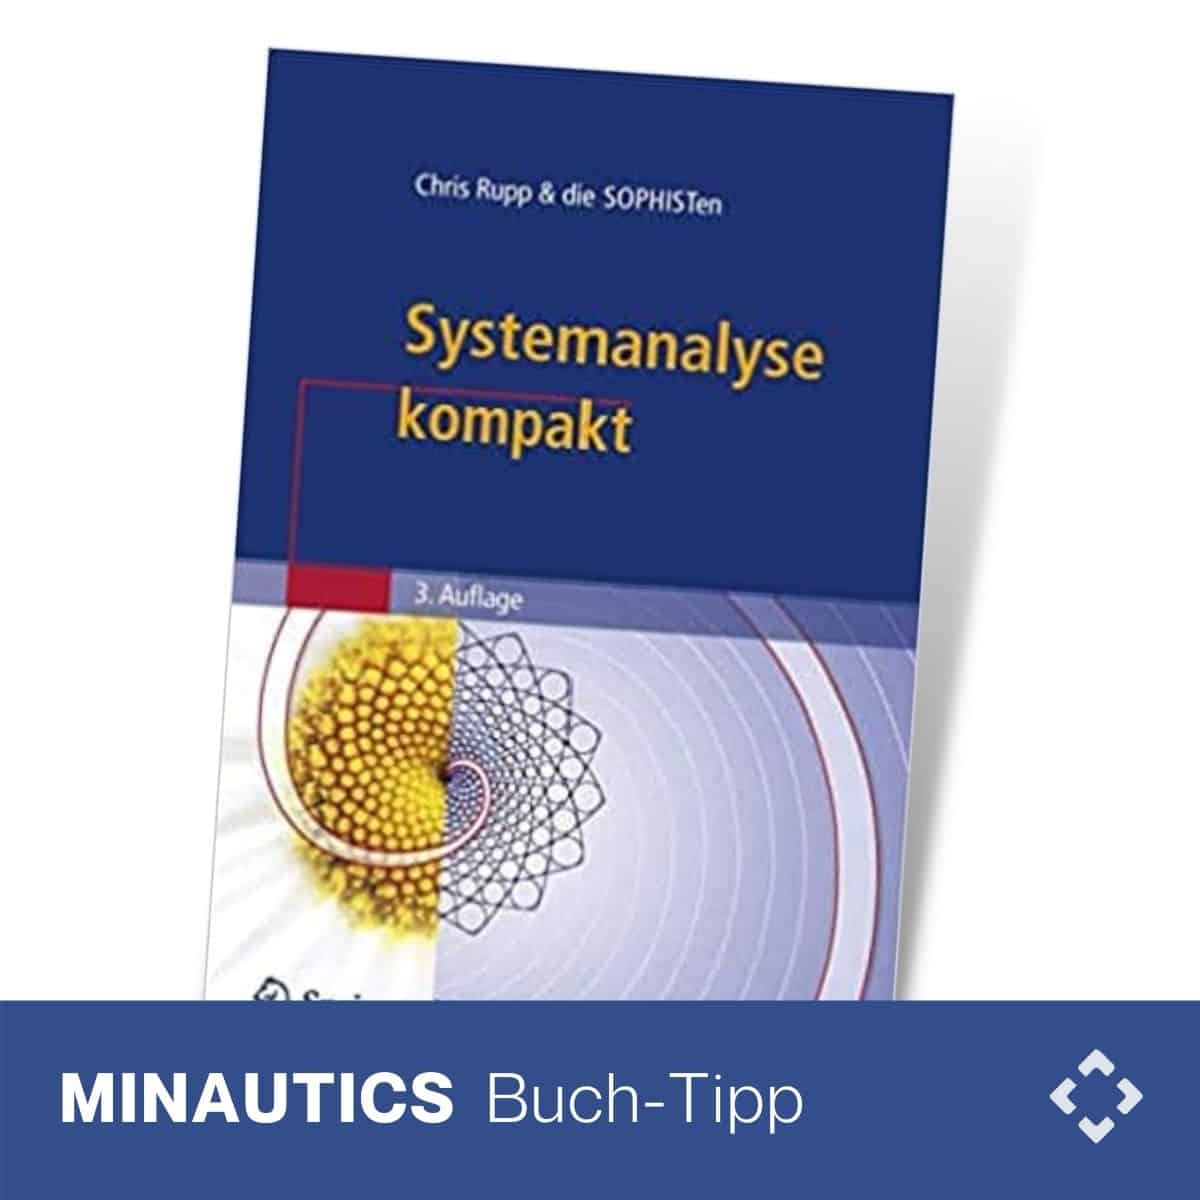 Systemanalyse kompakt 0 (0)